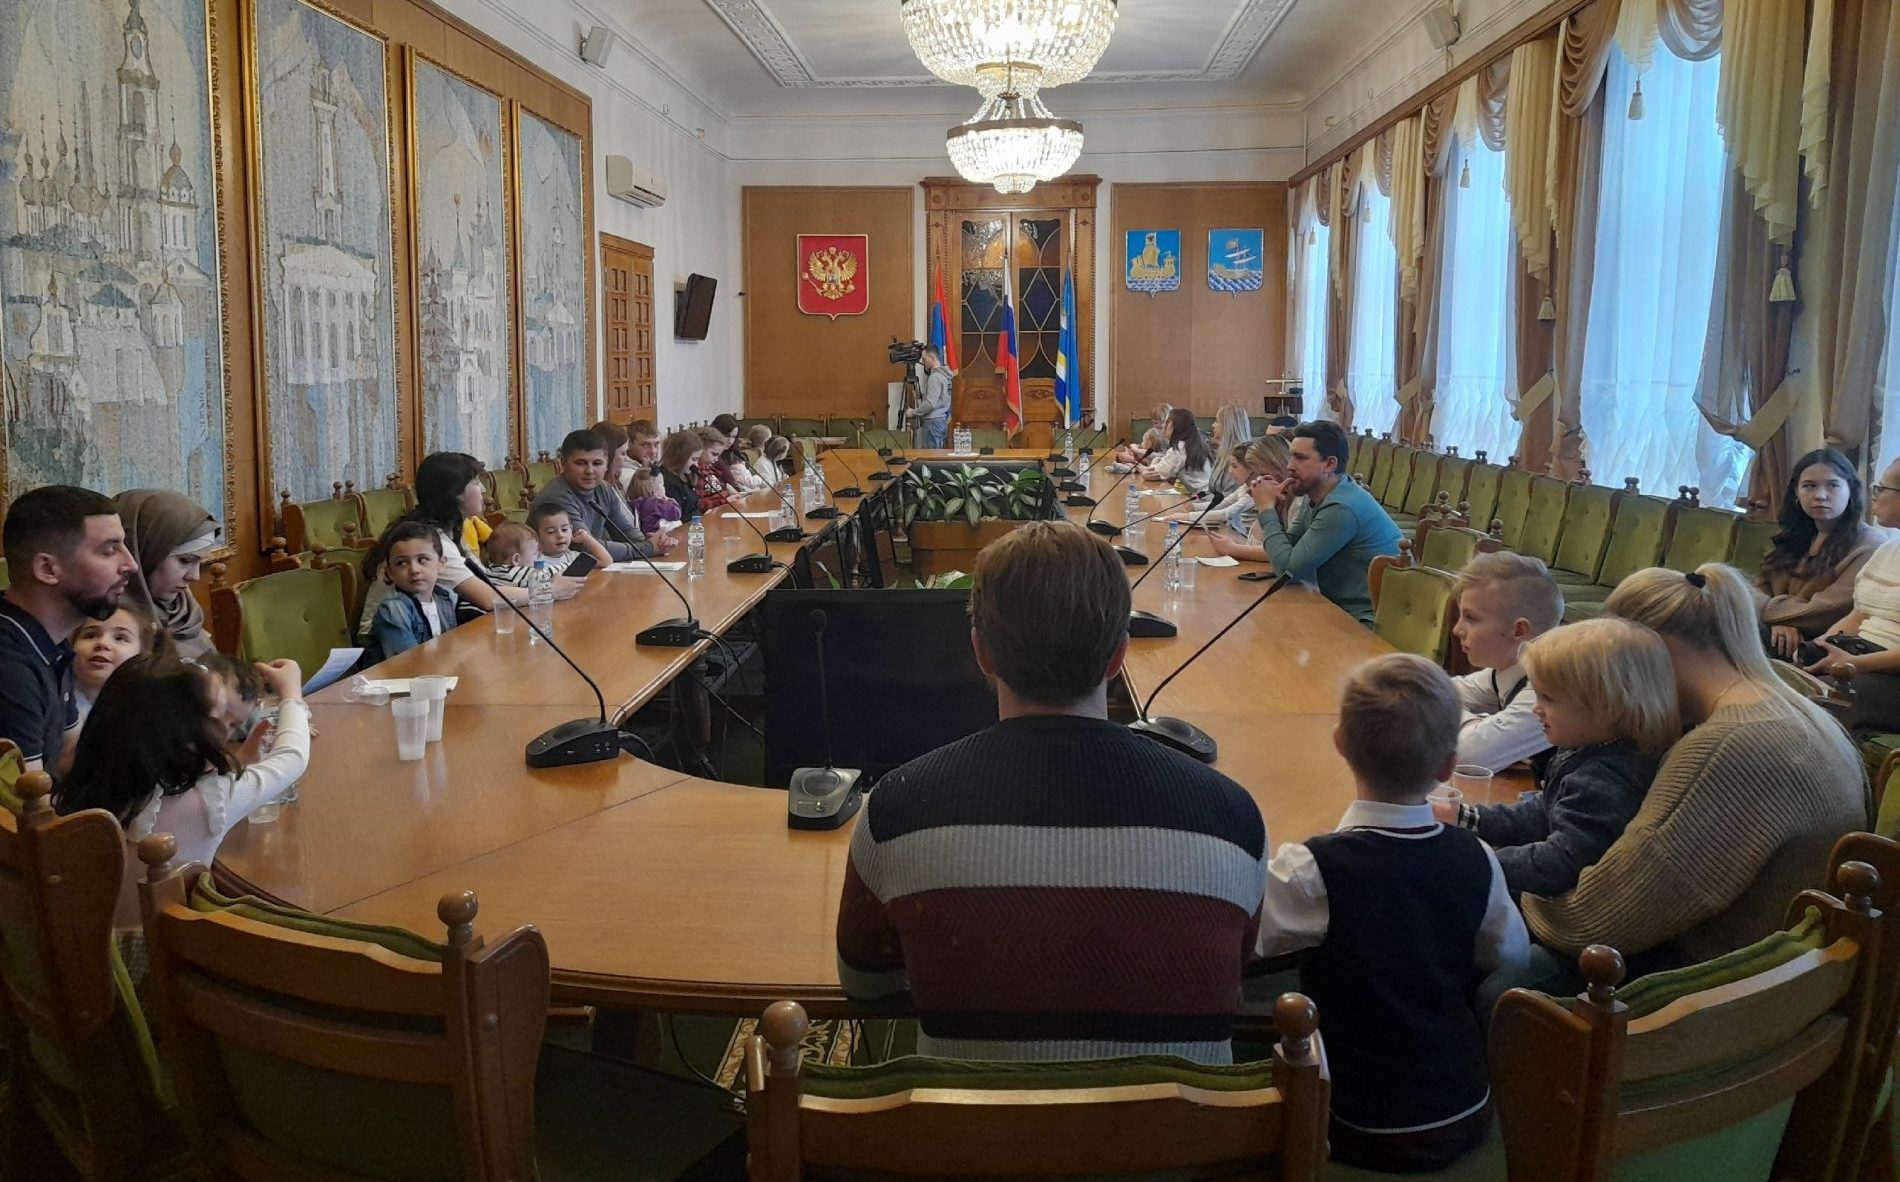 18 молодых семей получили жилье в Костроме